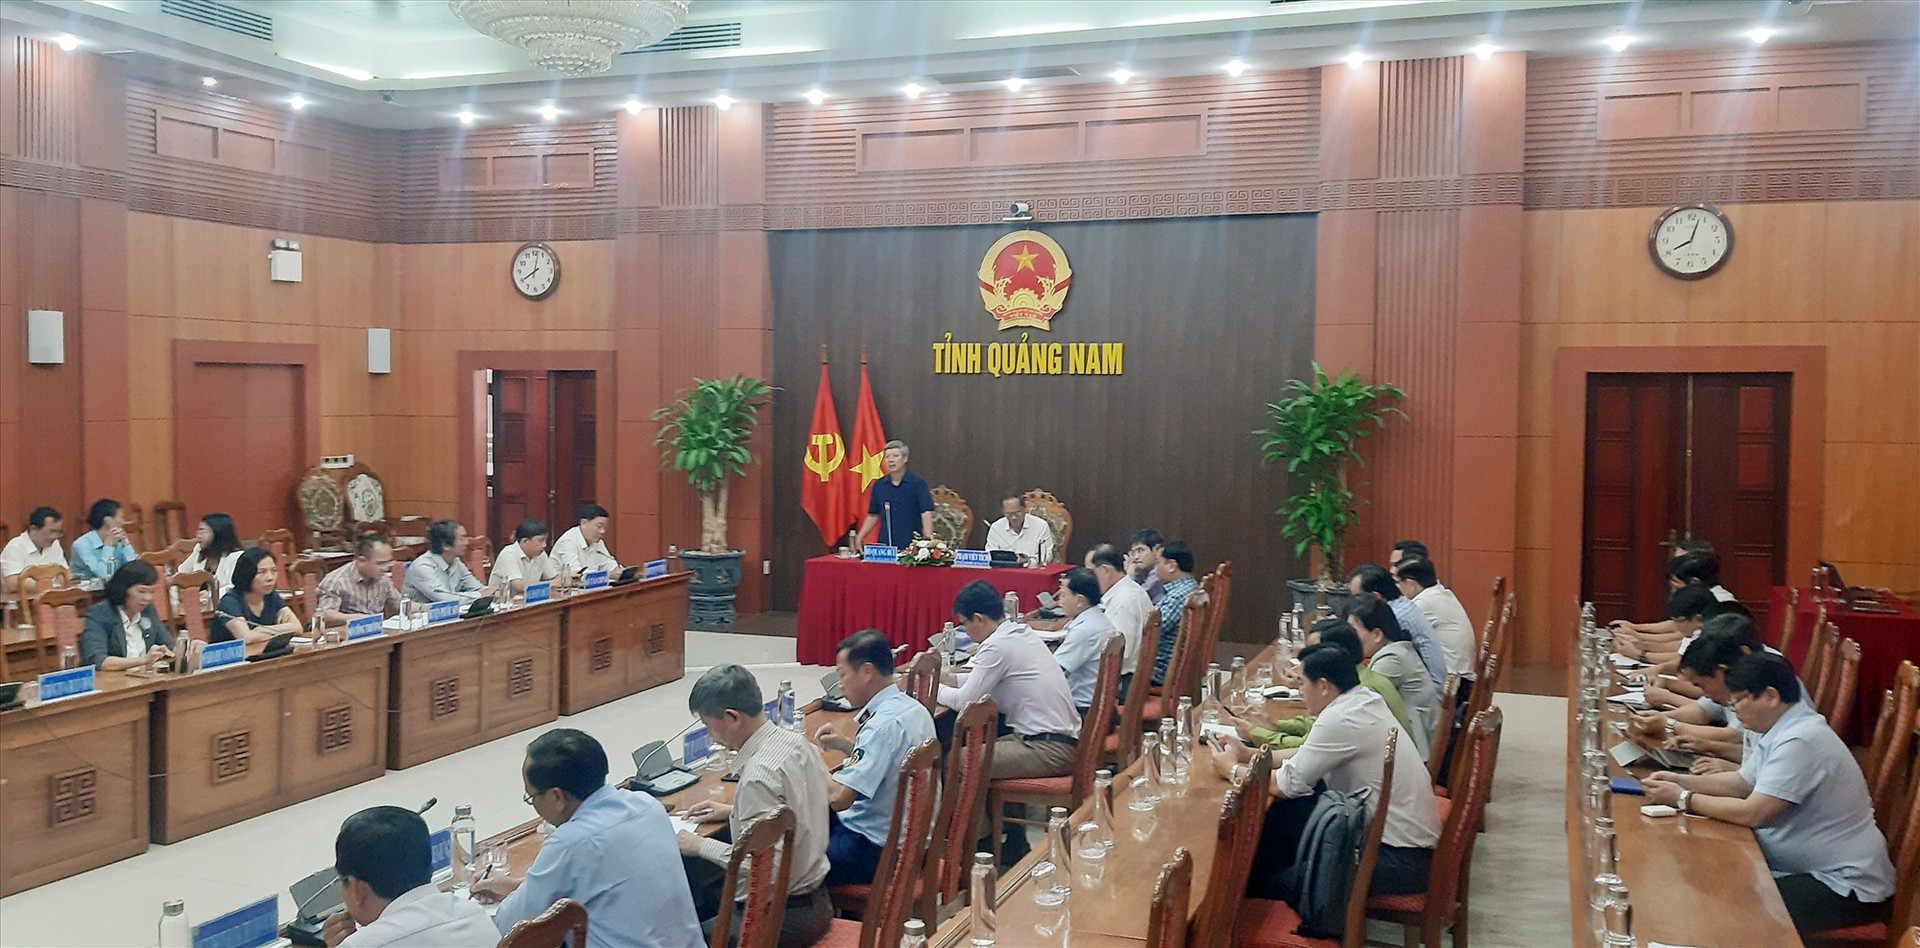 Phó Chủ tịch UBND tỉnh Hồ Quang Bửu chủ trì hội nghị trực tuyến toàn tỉnh tổng kết, đánh giá kết quả thực hiện kế hoạch phát triển ngành nông nghiệp - nông thôn năm 2022, vào hôm qua 22/11. Ảnh: N.P